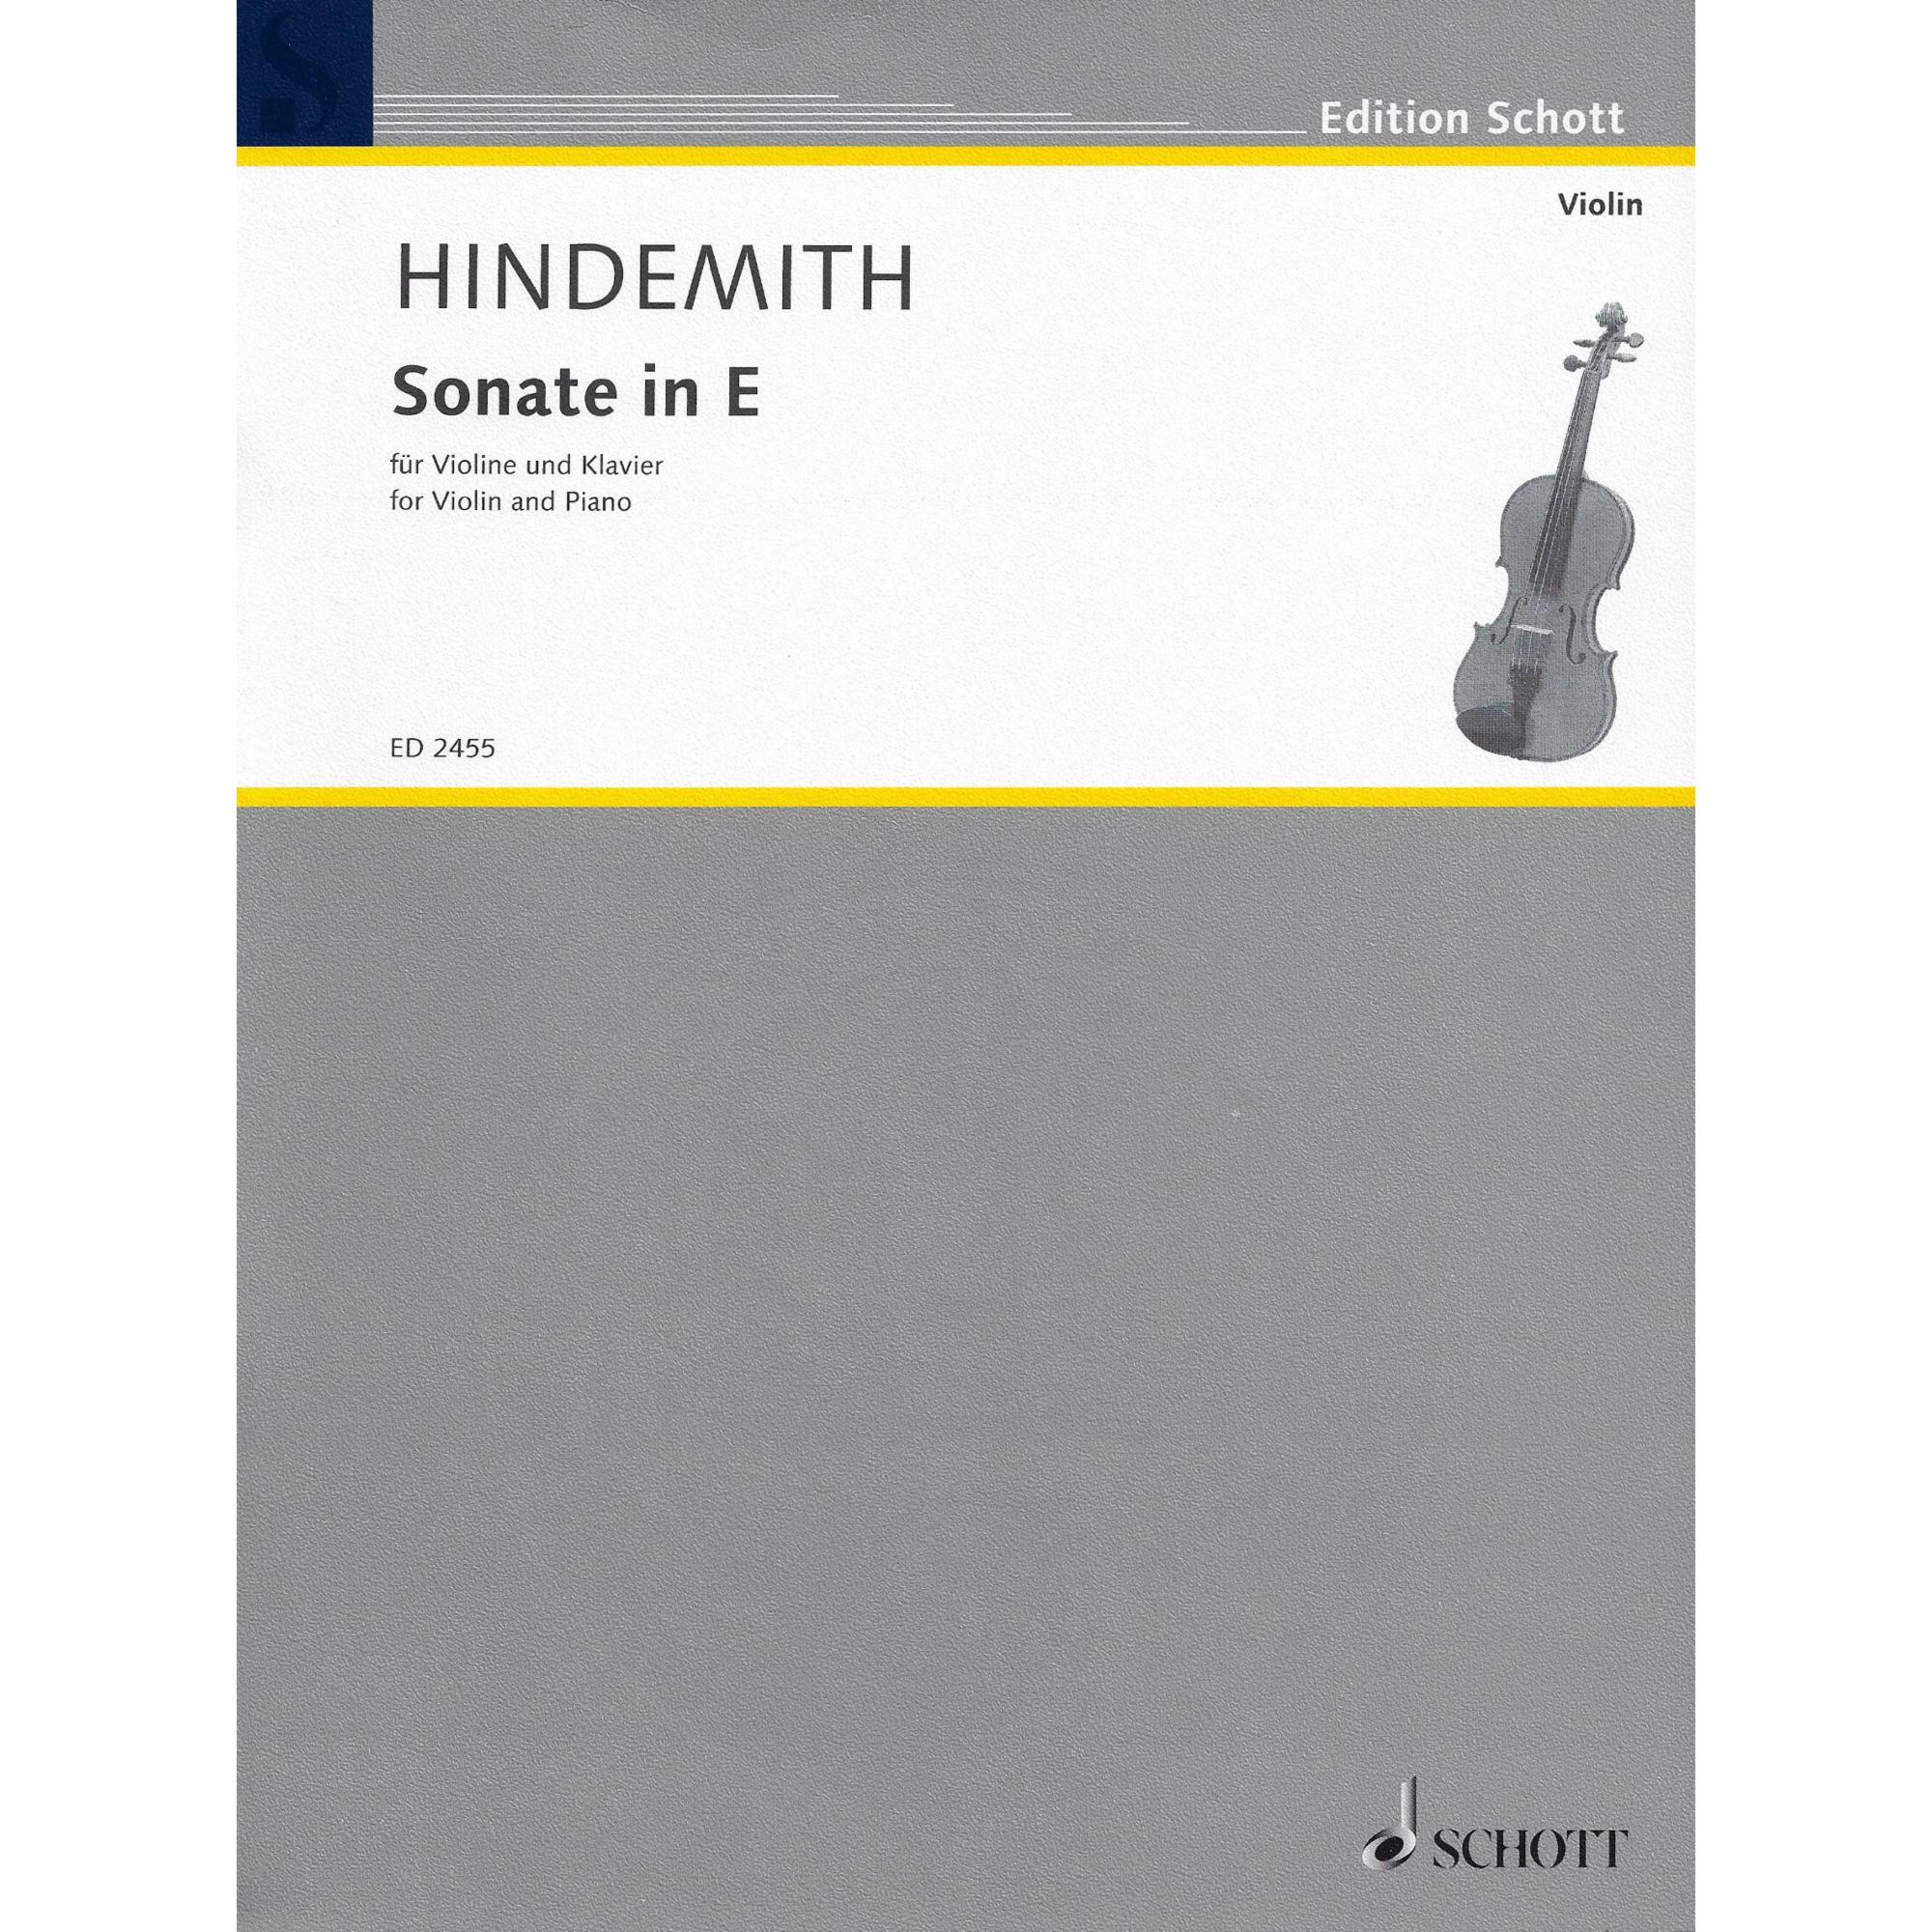 Hindemith -- Sonata in E Major for Violin and Piano